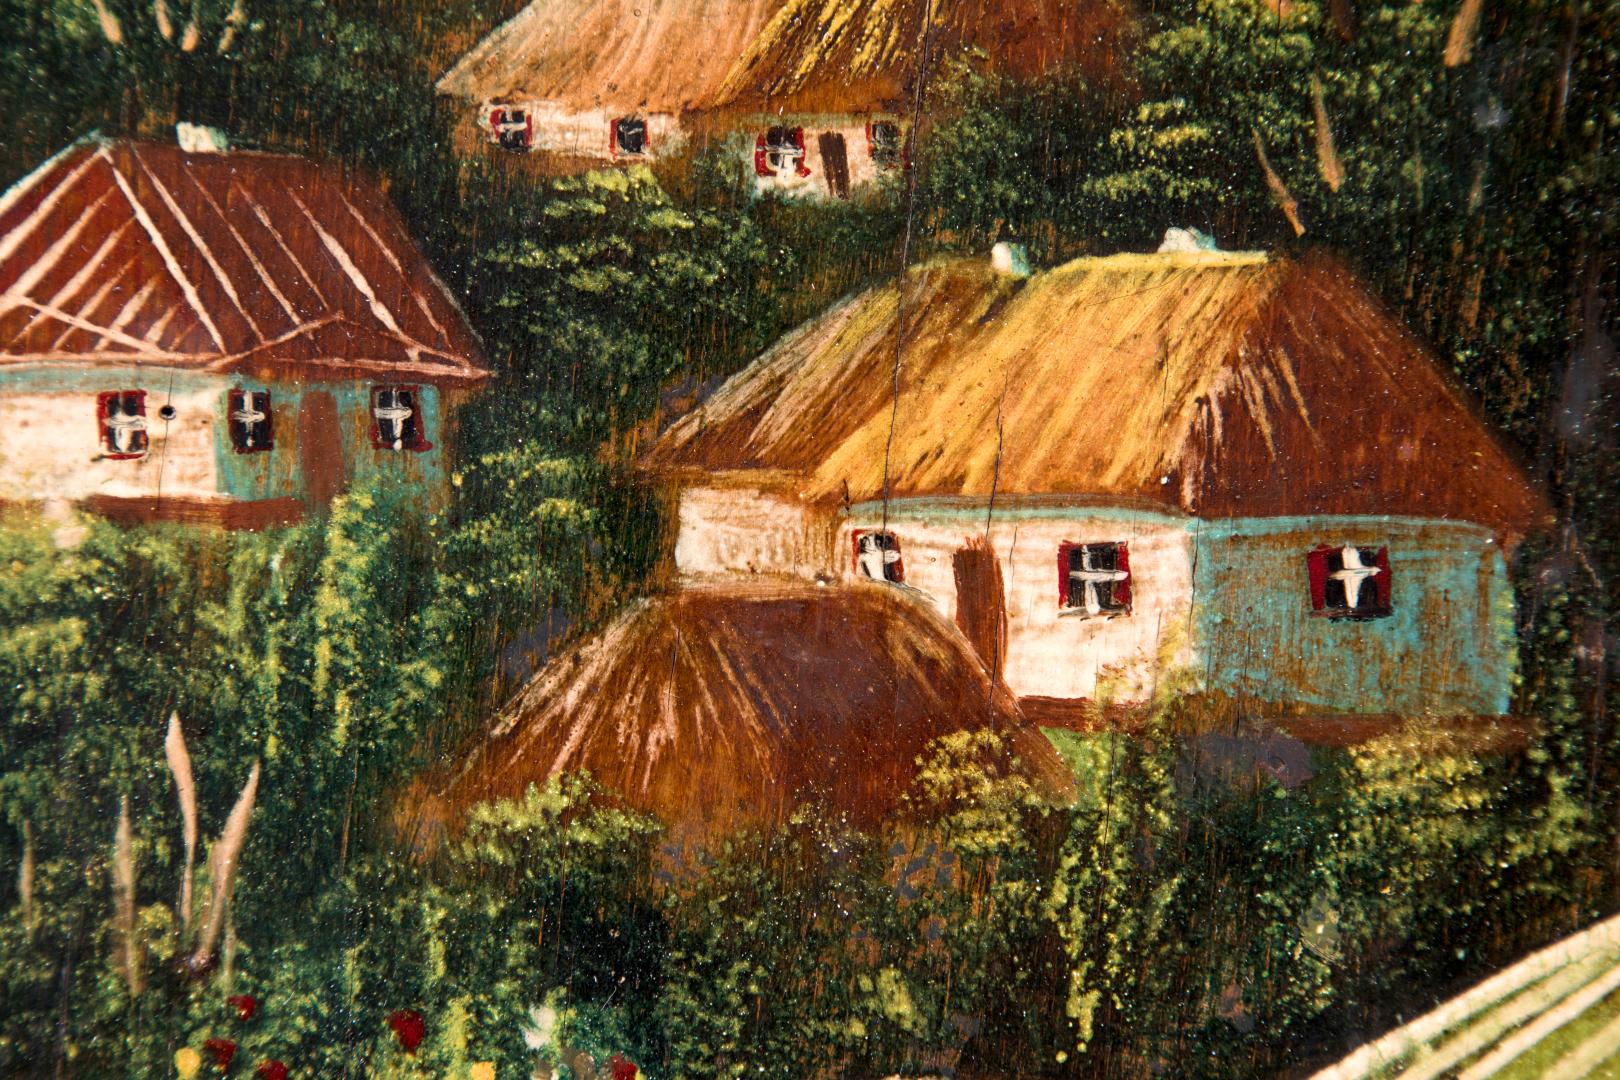 Village of Kyrylivka